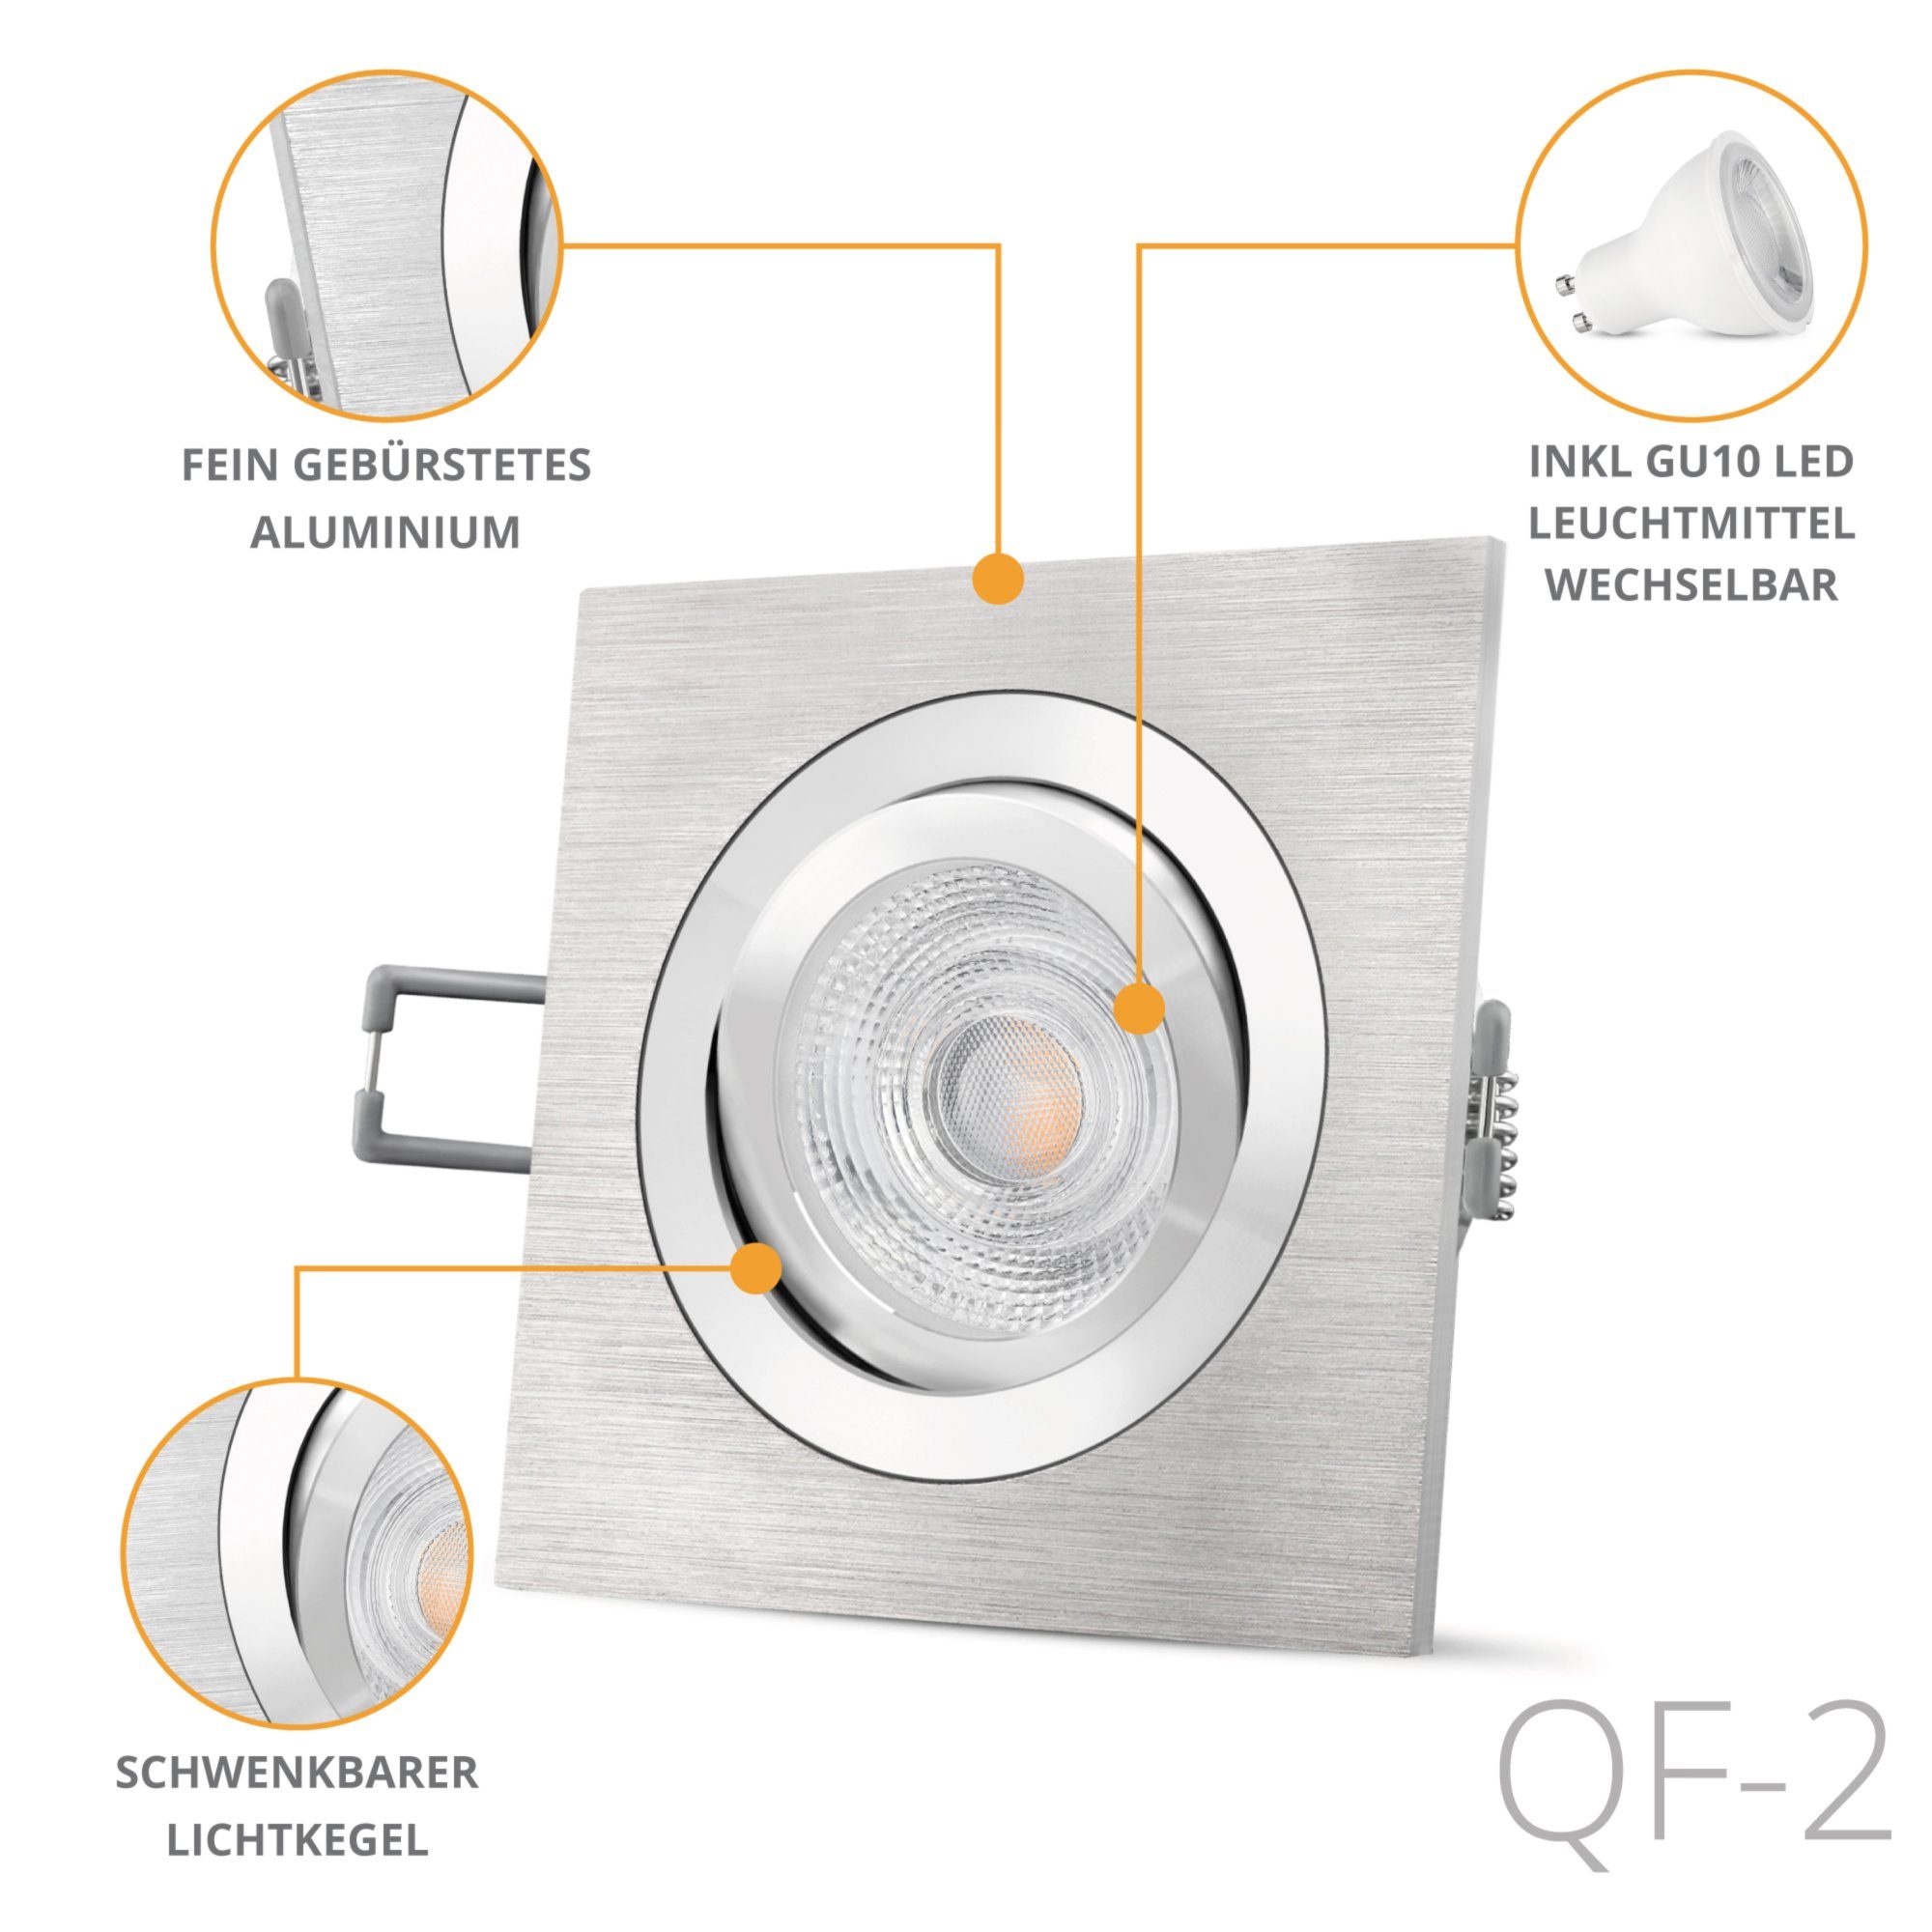 Einbauleuchte LED Warmweiß QF-2 SSC-LUXon gebuerstet Einbaustrahler Alu LED schwenkbar, quadratische